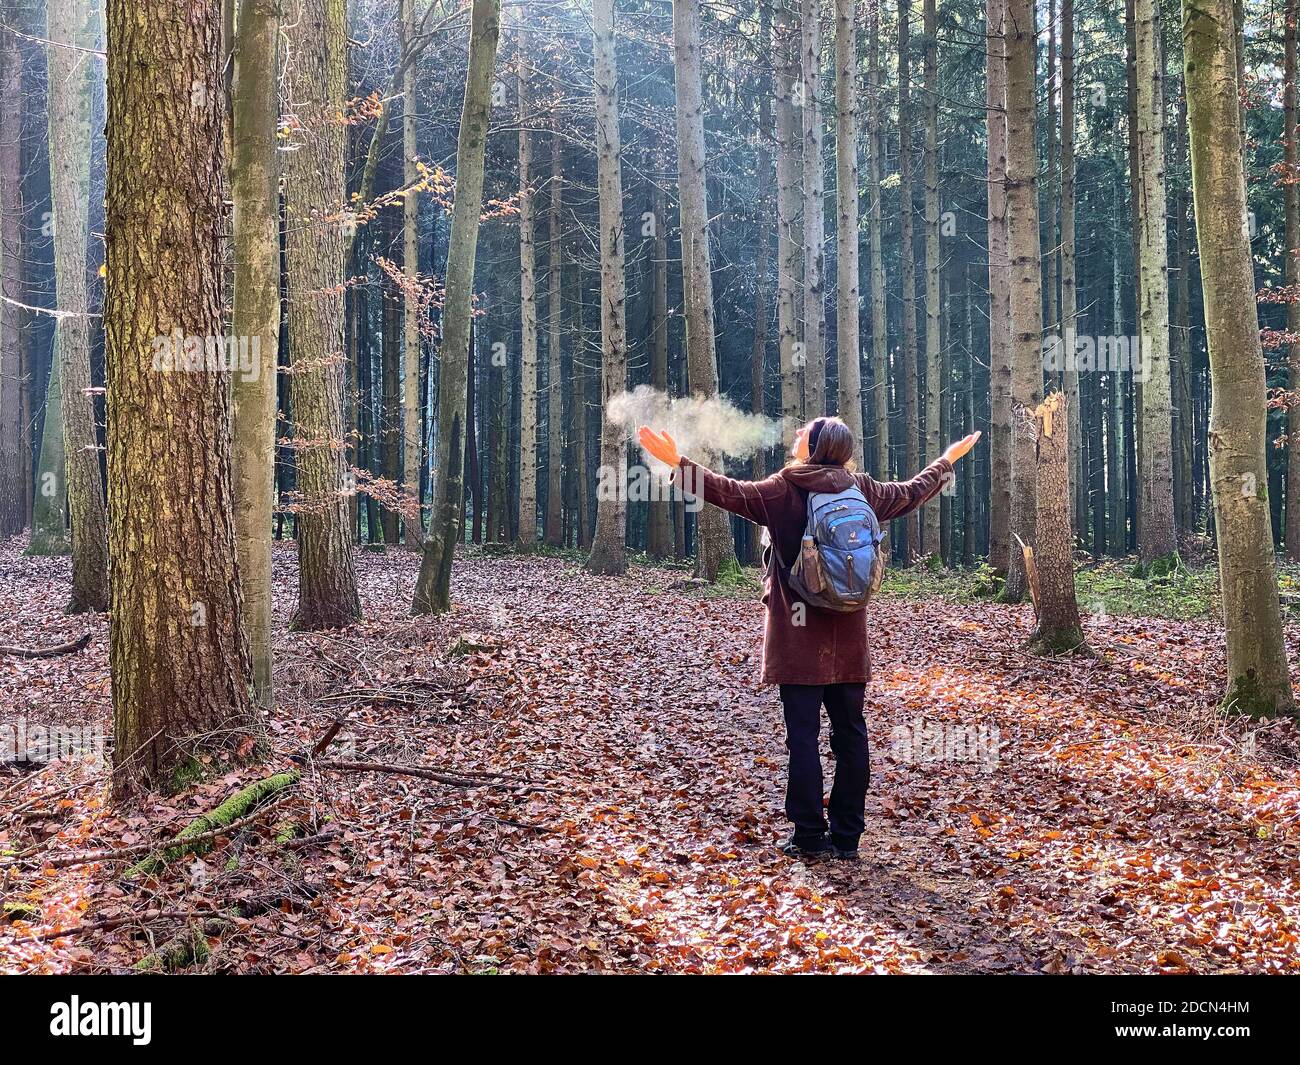 Una donna sta camminando attraverso la foresta in autunno, bagni di foresta, o shinrin-yoku il 22 novembre 2020 a Pfaffenhofen a.H. ILM, Baviera, Germania. Forest Bath – ha il potere di contrastare malattie come cancro, ictus, ulcere gastriche, depressione. Il termine emerse in Giappone negli anni ottanta come esercizio fisiologico e psicologico chiamato shinrin-yoku ("bagno di foresta" o "presa nella foresta). © Peter Schatz / Alamy Stock Photos MODELLO RILASCIATO Foto Stock